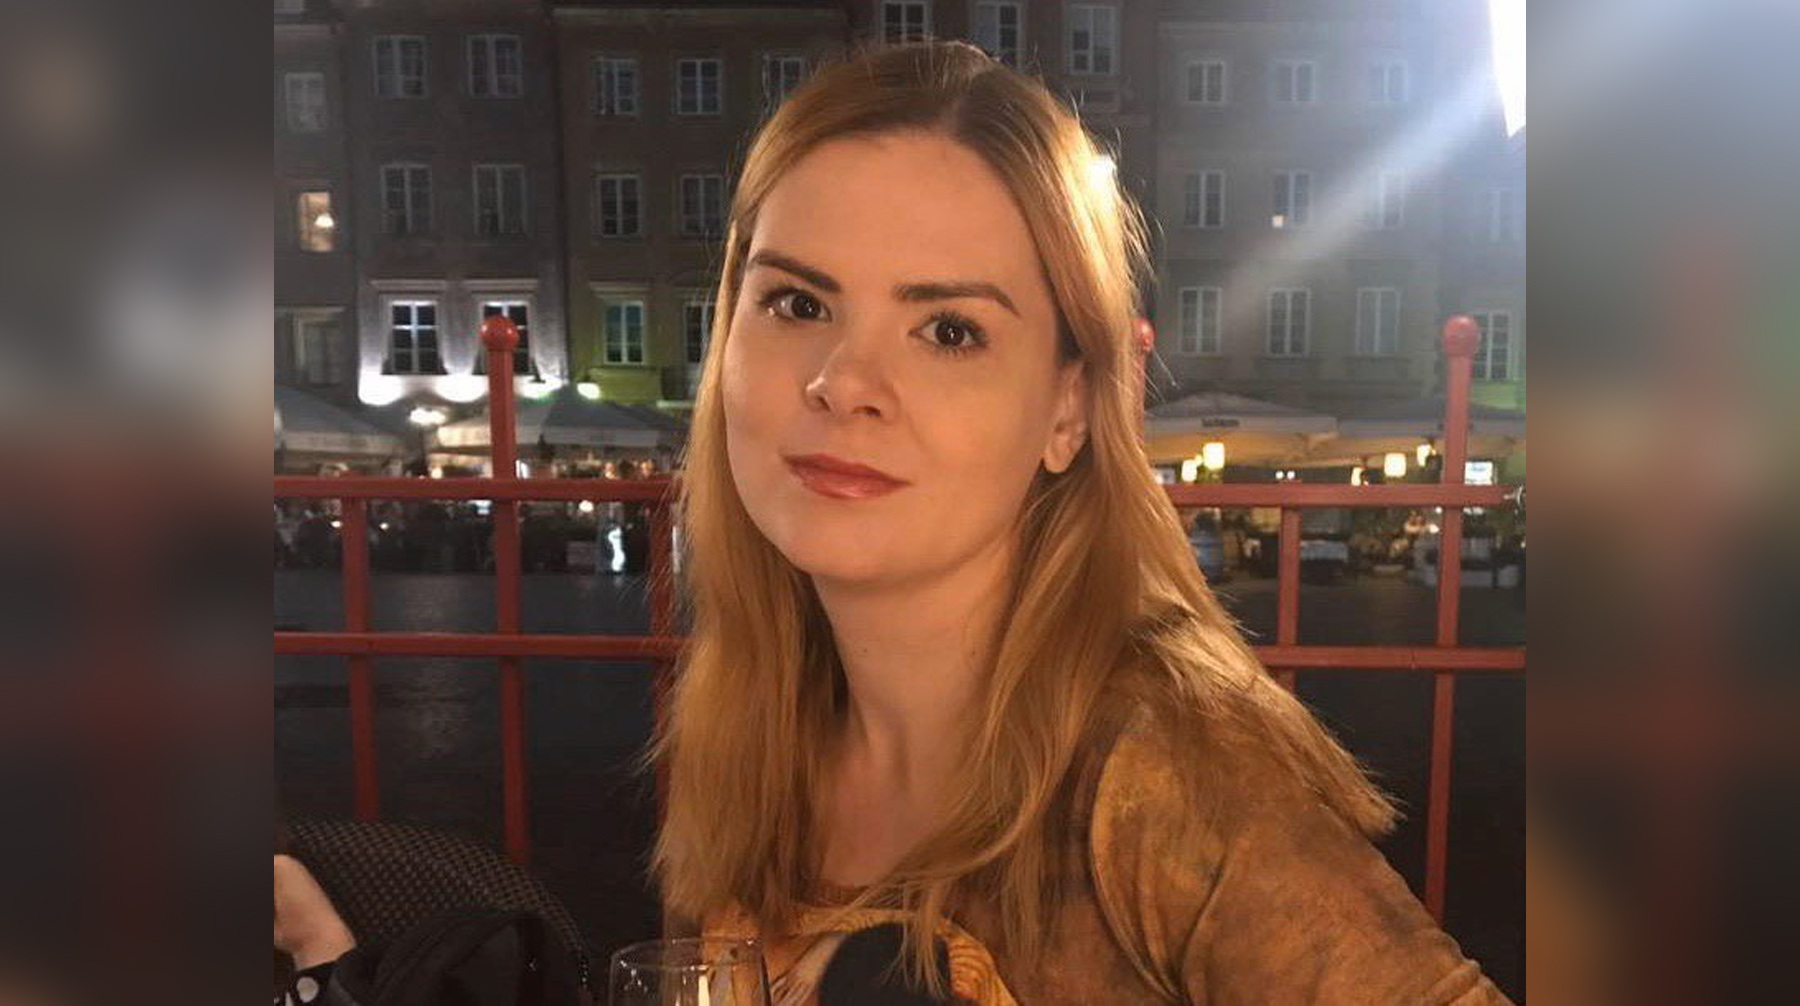 В редакции рассказали, что сотрудники СКР провели обыск в доме у Юлии Полухиной, после чего забрали журналистку на допрос Юлия Полухина